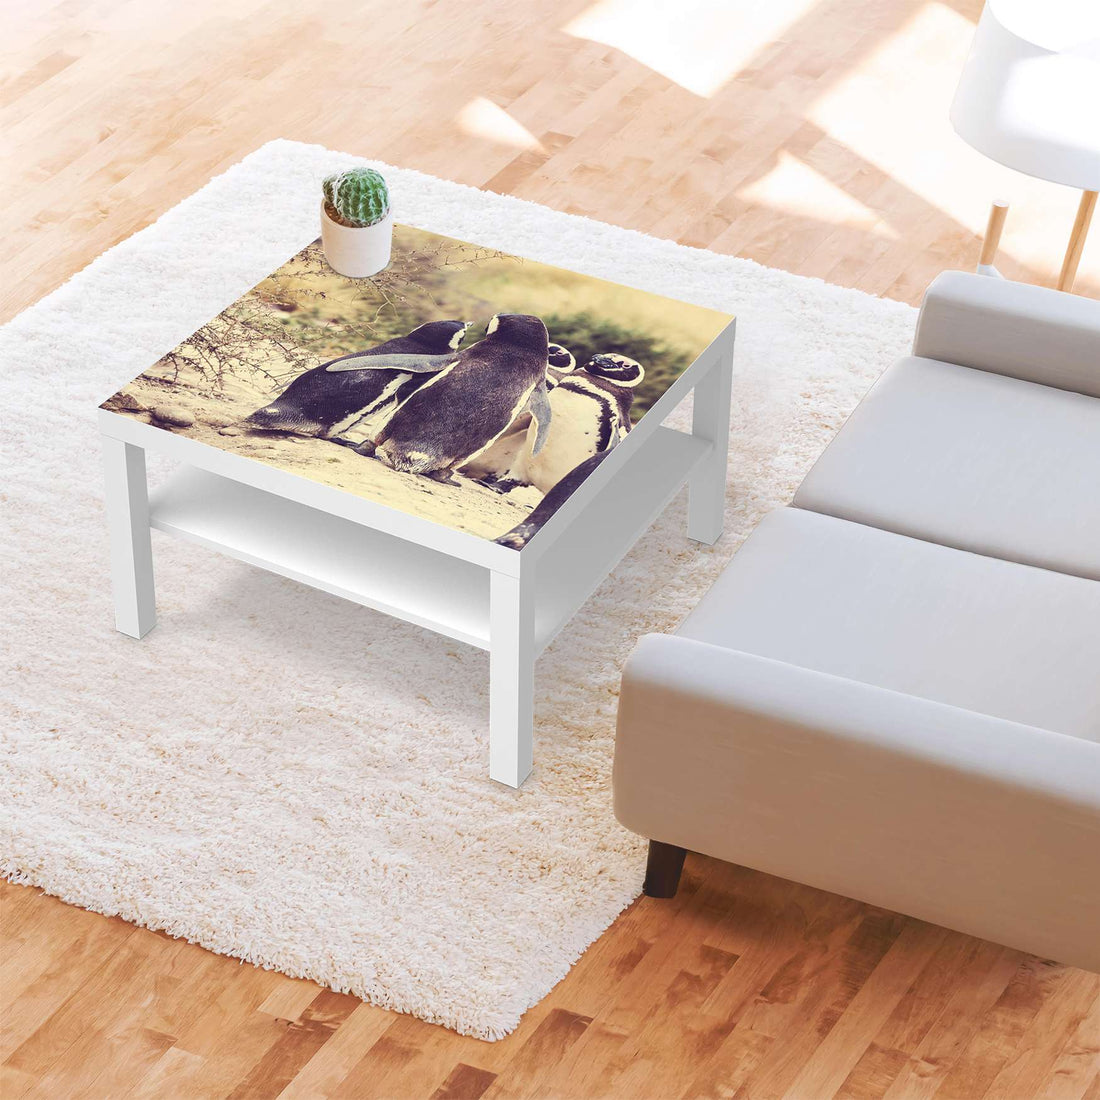 Selbstklebende Folie Pingu Friendship - IKEA Lack Tisch 78x78 cm - Wohnzimmer